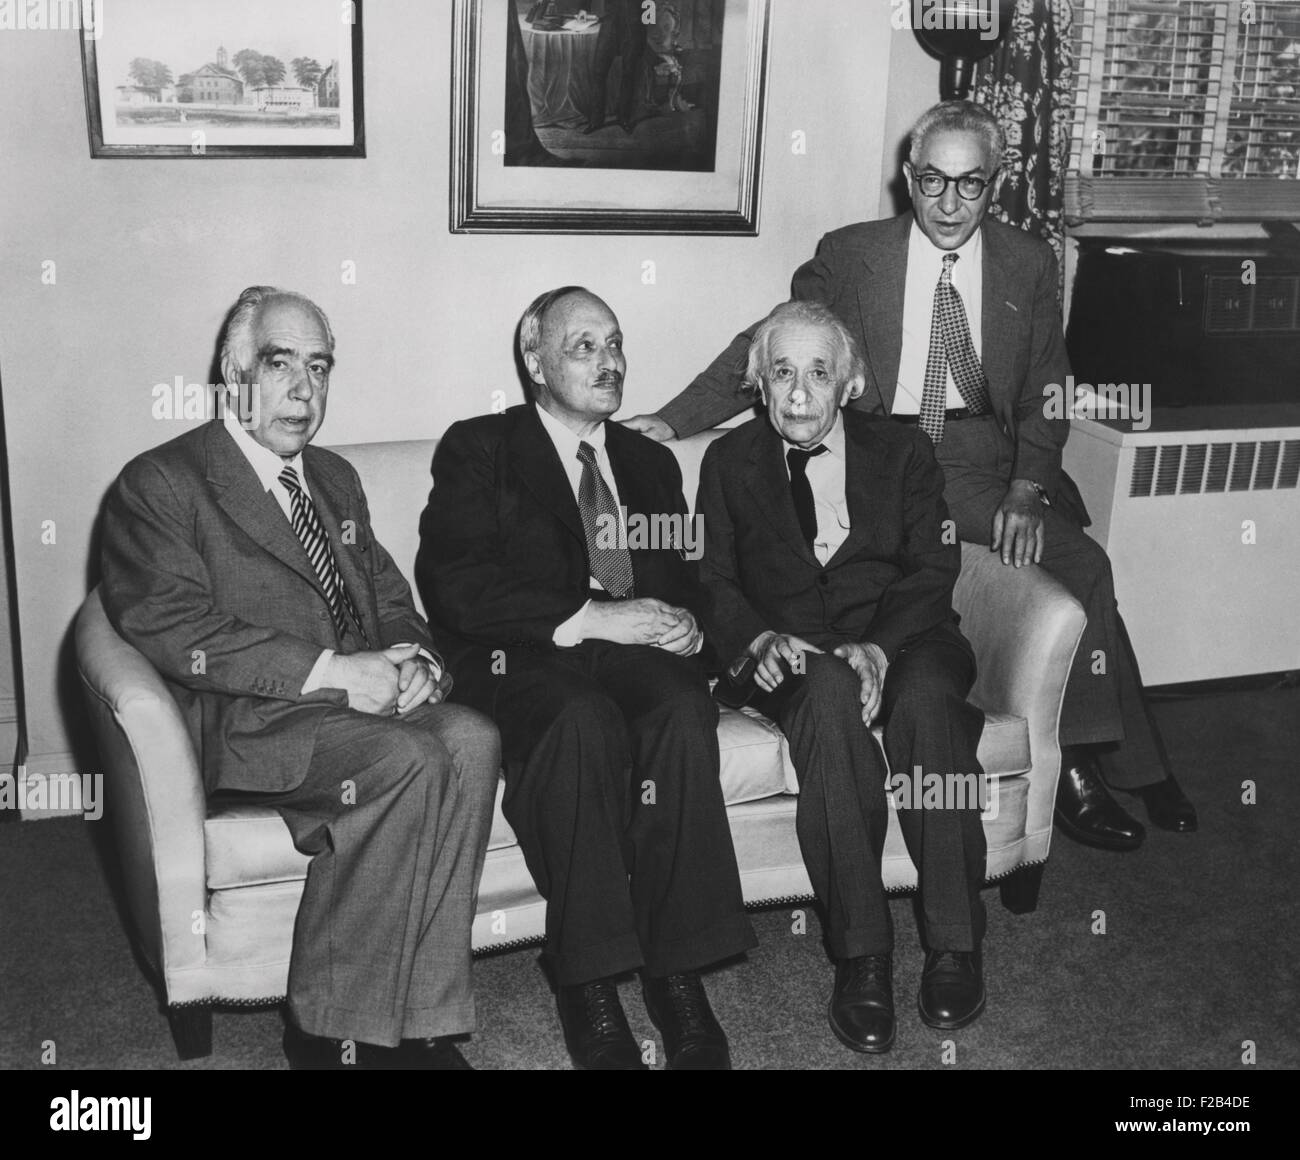 Portrait de quatre célèbres physiciens nucléaires. L-R : Niels Bohr ; James Franck ; Albert Einstein ; et Isidor Rabi. Tous ont été lauréats du Prix Nobel ainsi que des réfugiés d'Europe entre 1933-43. - BSLOC  2015 (1 69) Banque D'Images